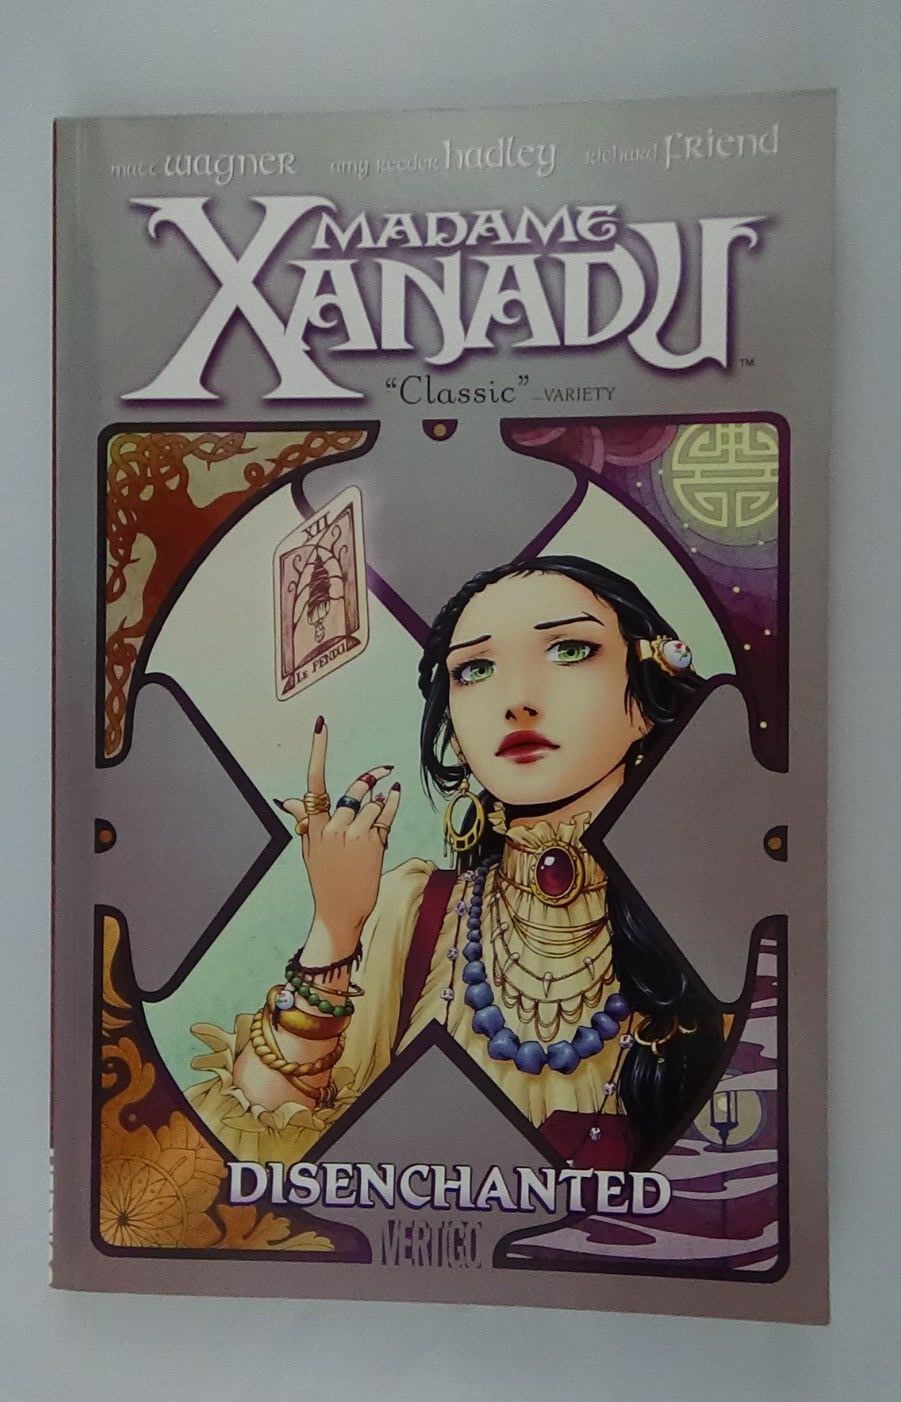 Madame Xanadu #1 Disenchanted (Vertigo, September 2009) Paperback #011